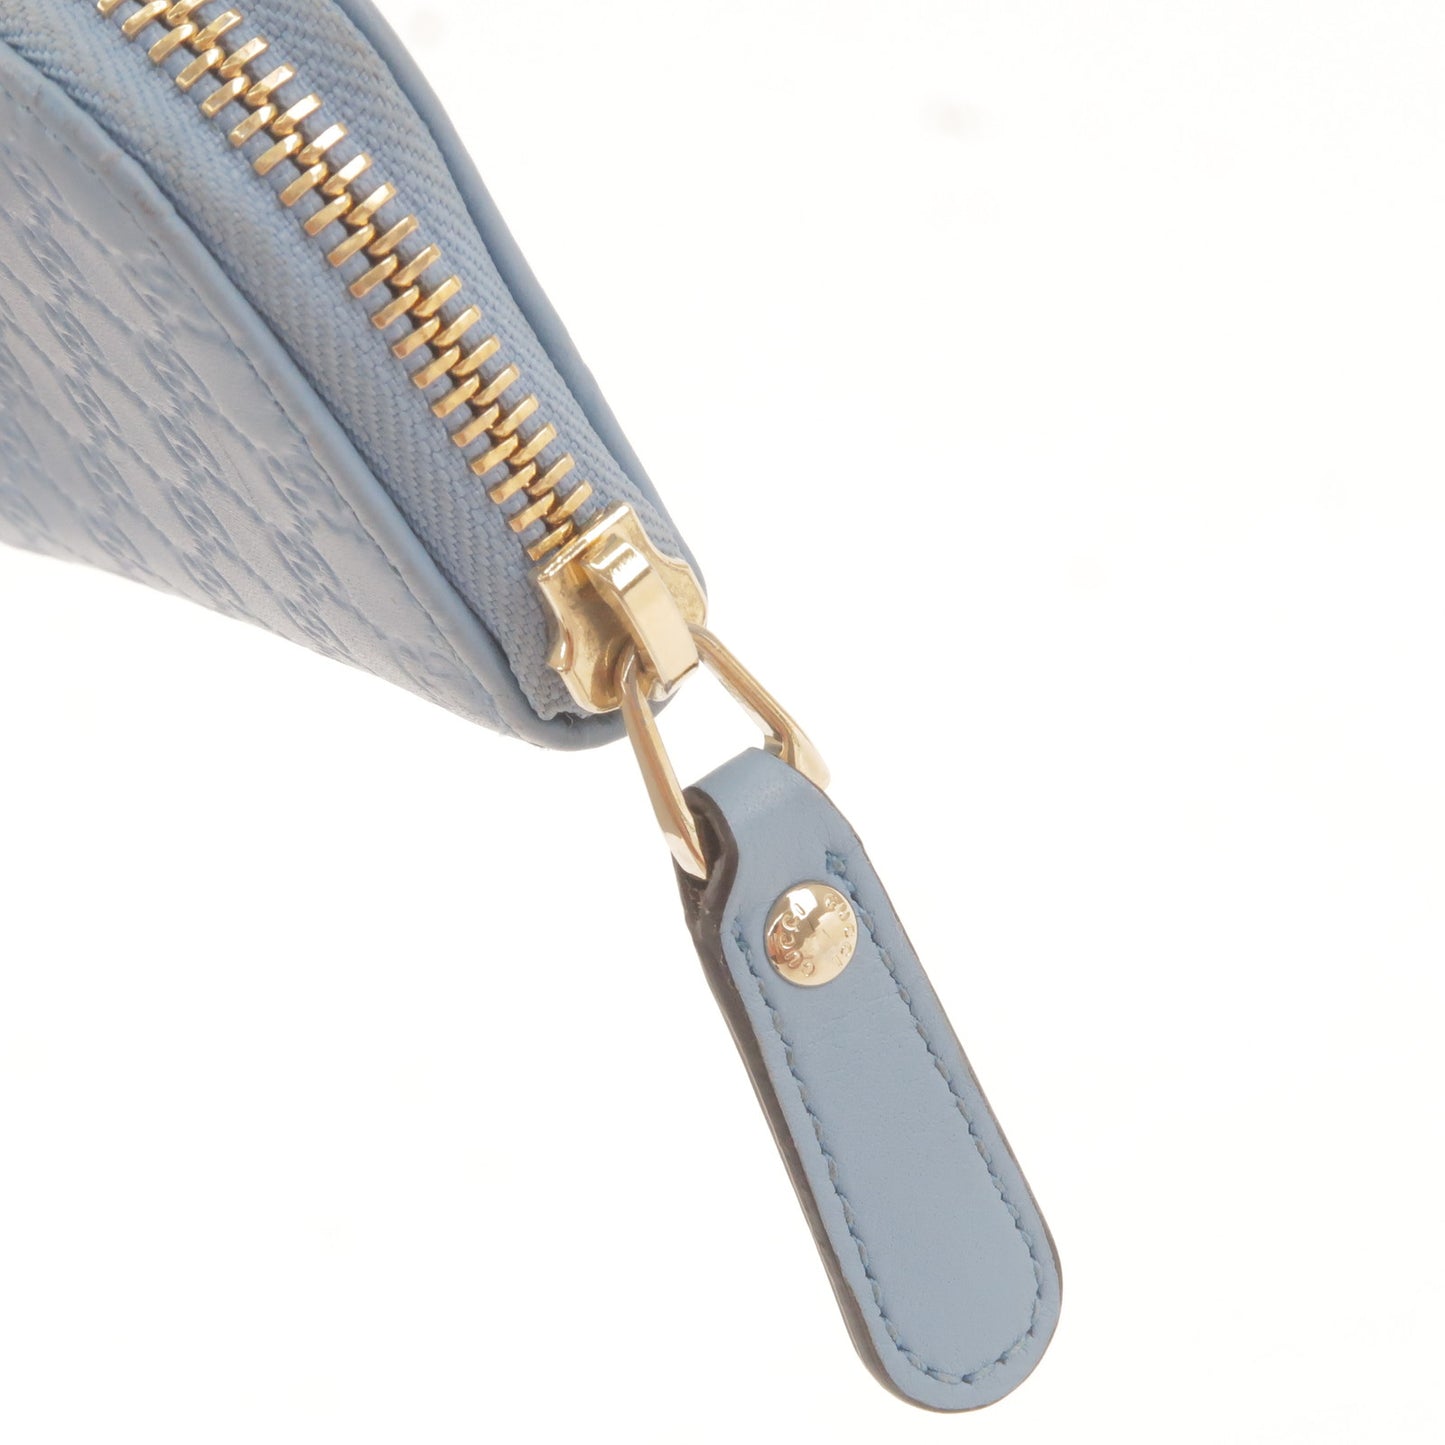 GUCCI Micro Guccissima Leather Mini Coin Case Blue 449896